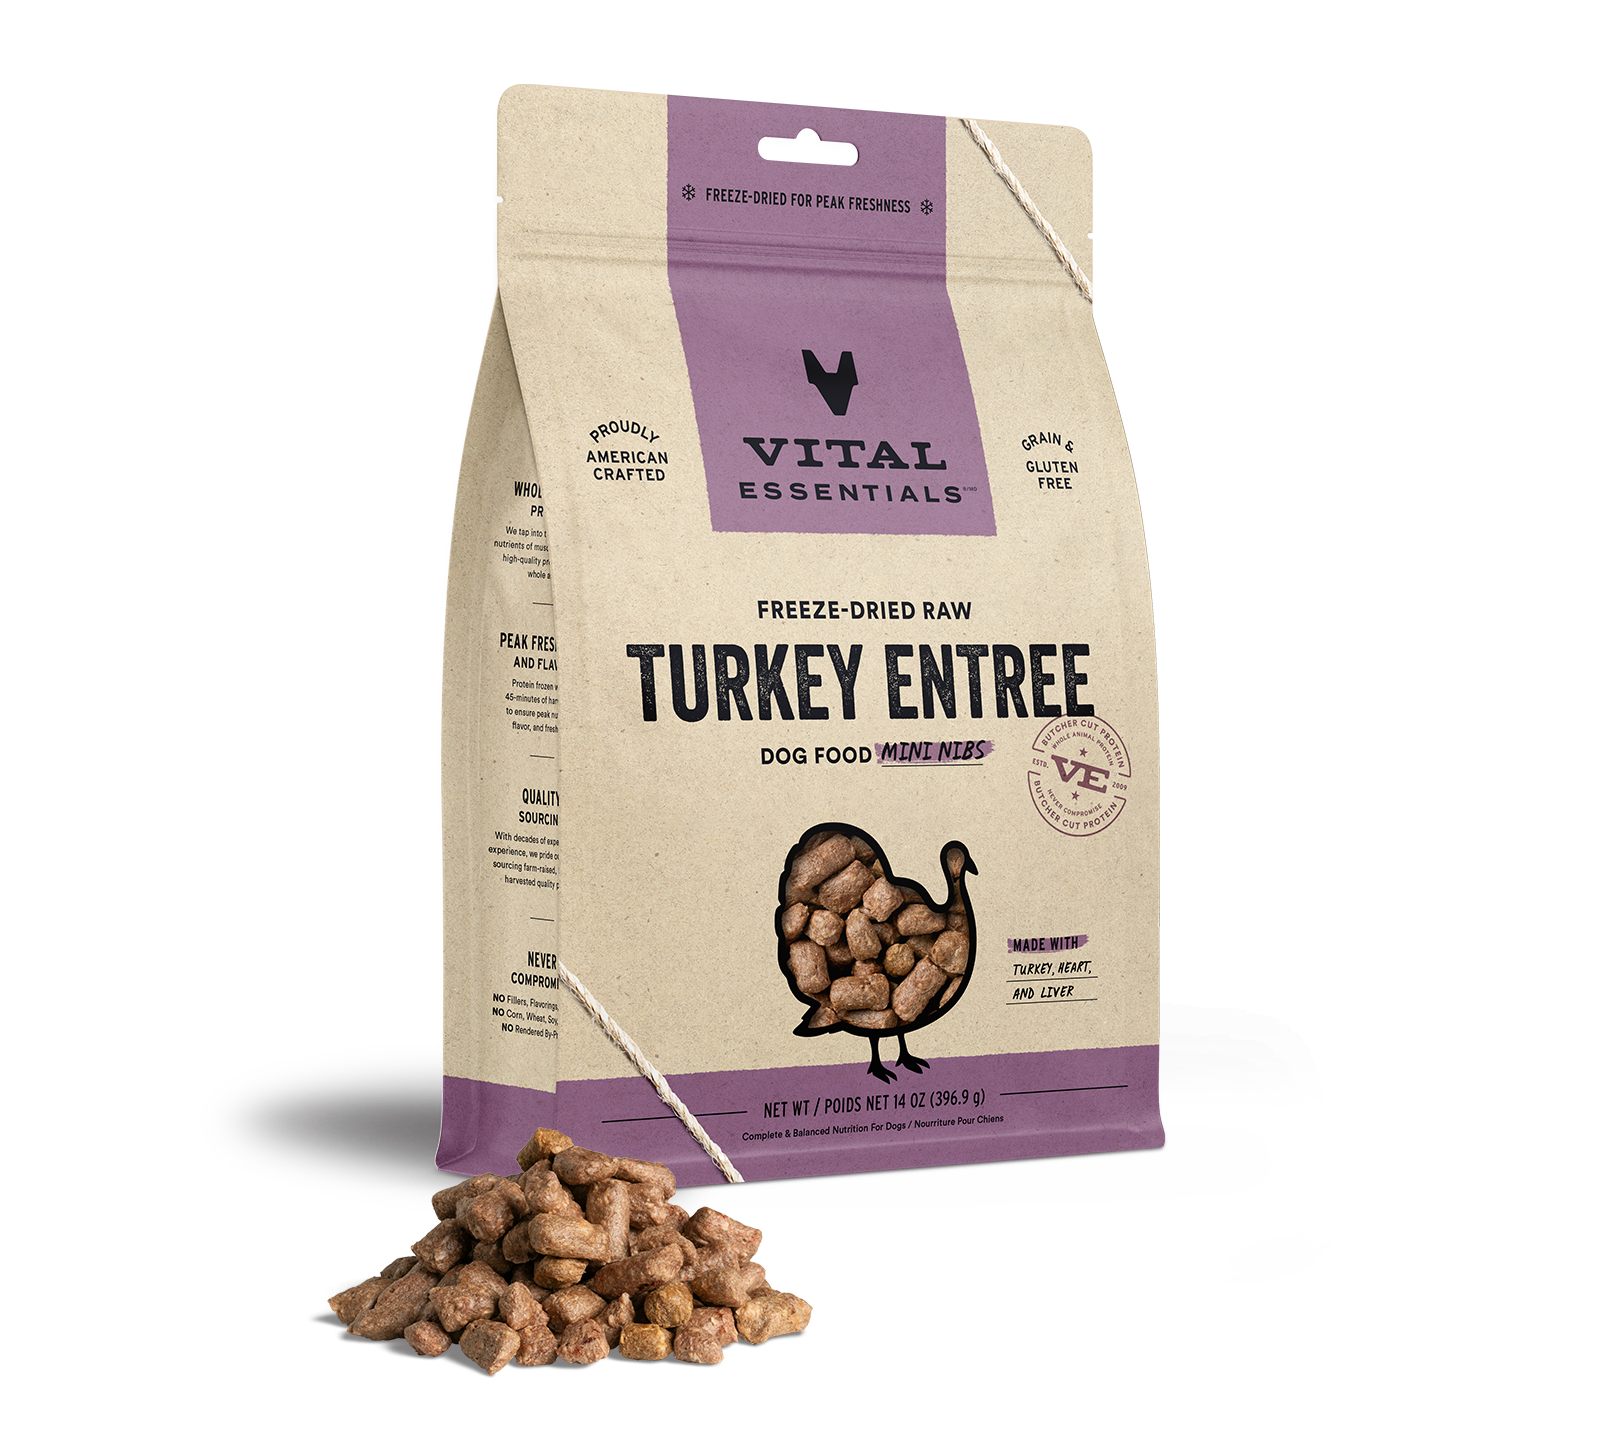 Vital Essentials Freeze-Dried Raw Turkey Entree Dog Food Mini Nibs, 14 oz - Healing/First Aid